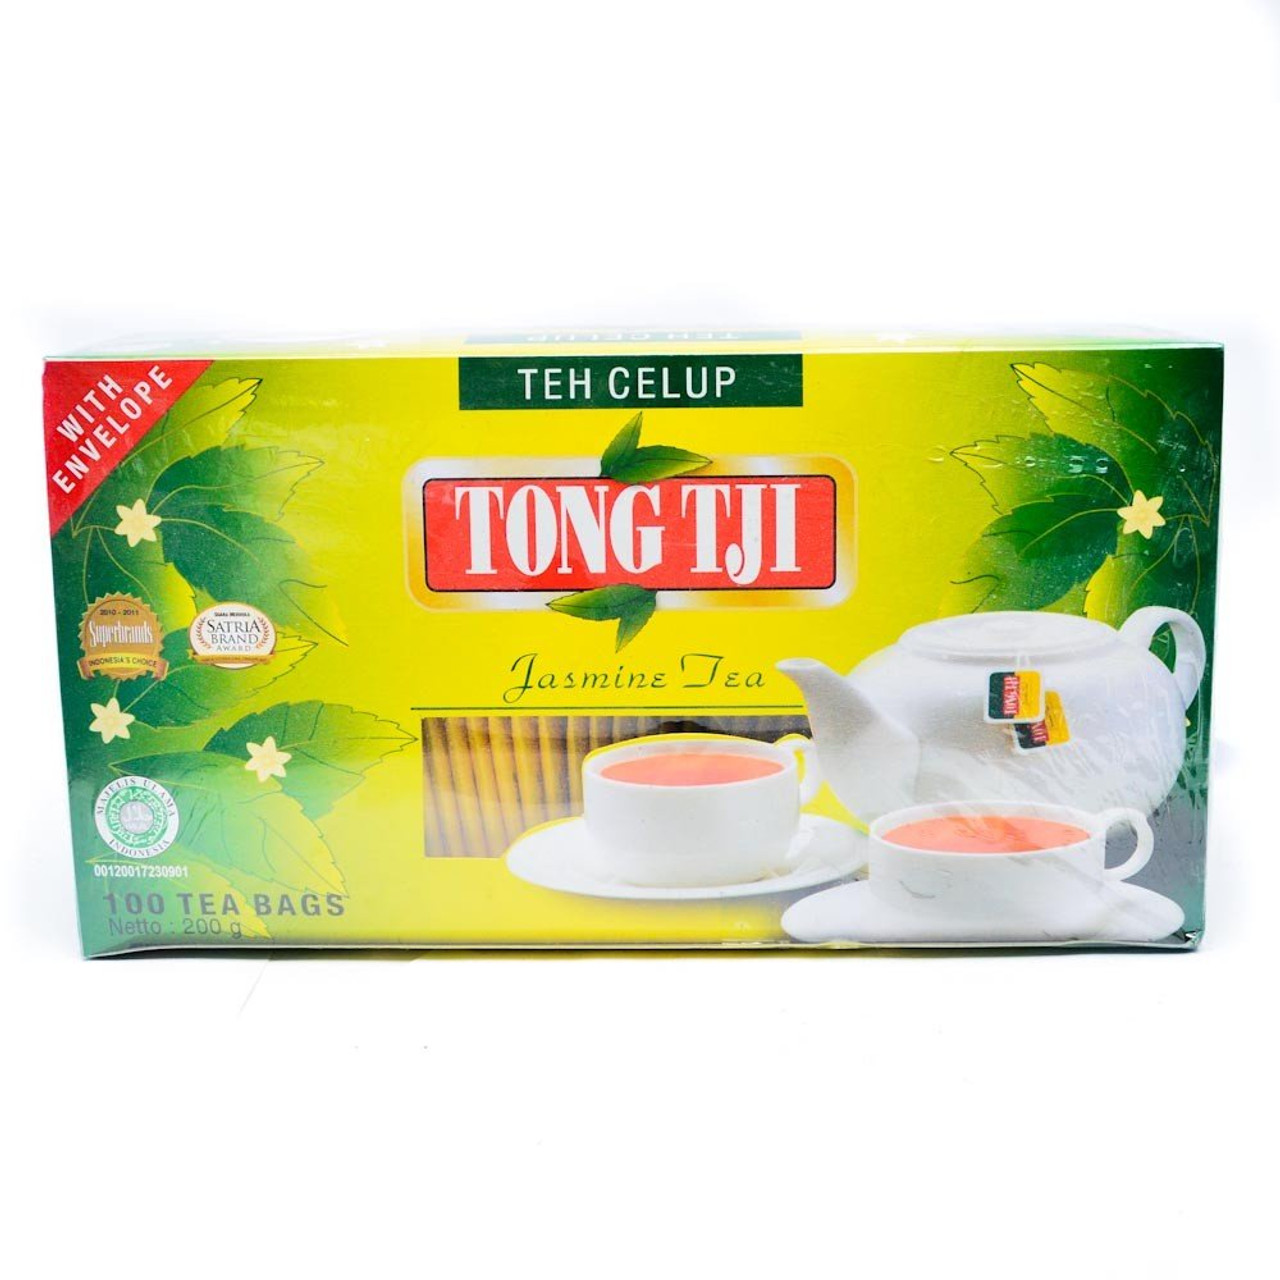 Tong Tji jasmine Tea 100-ct, with Envelope - UD Jawa Berkah Makmur